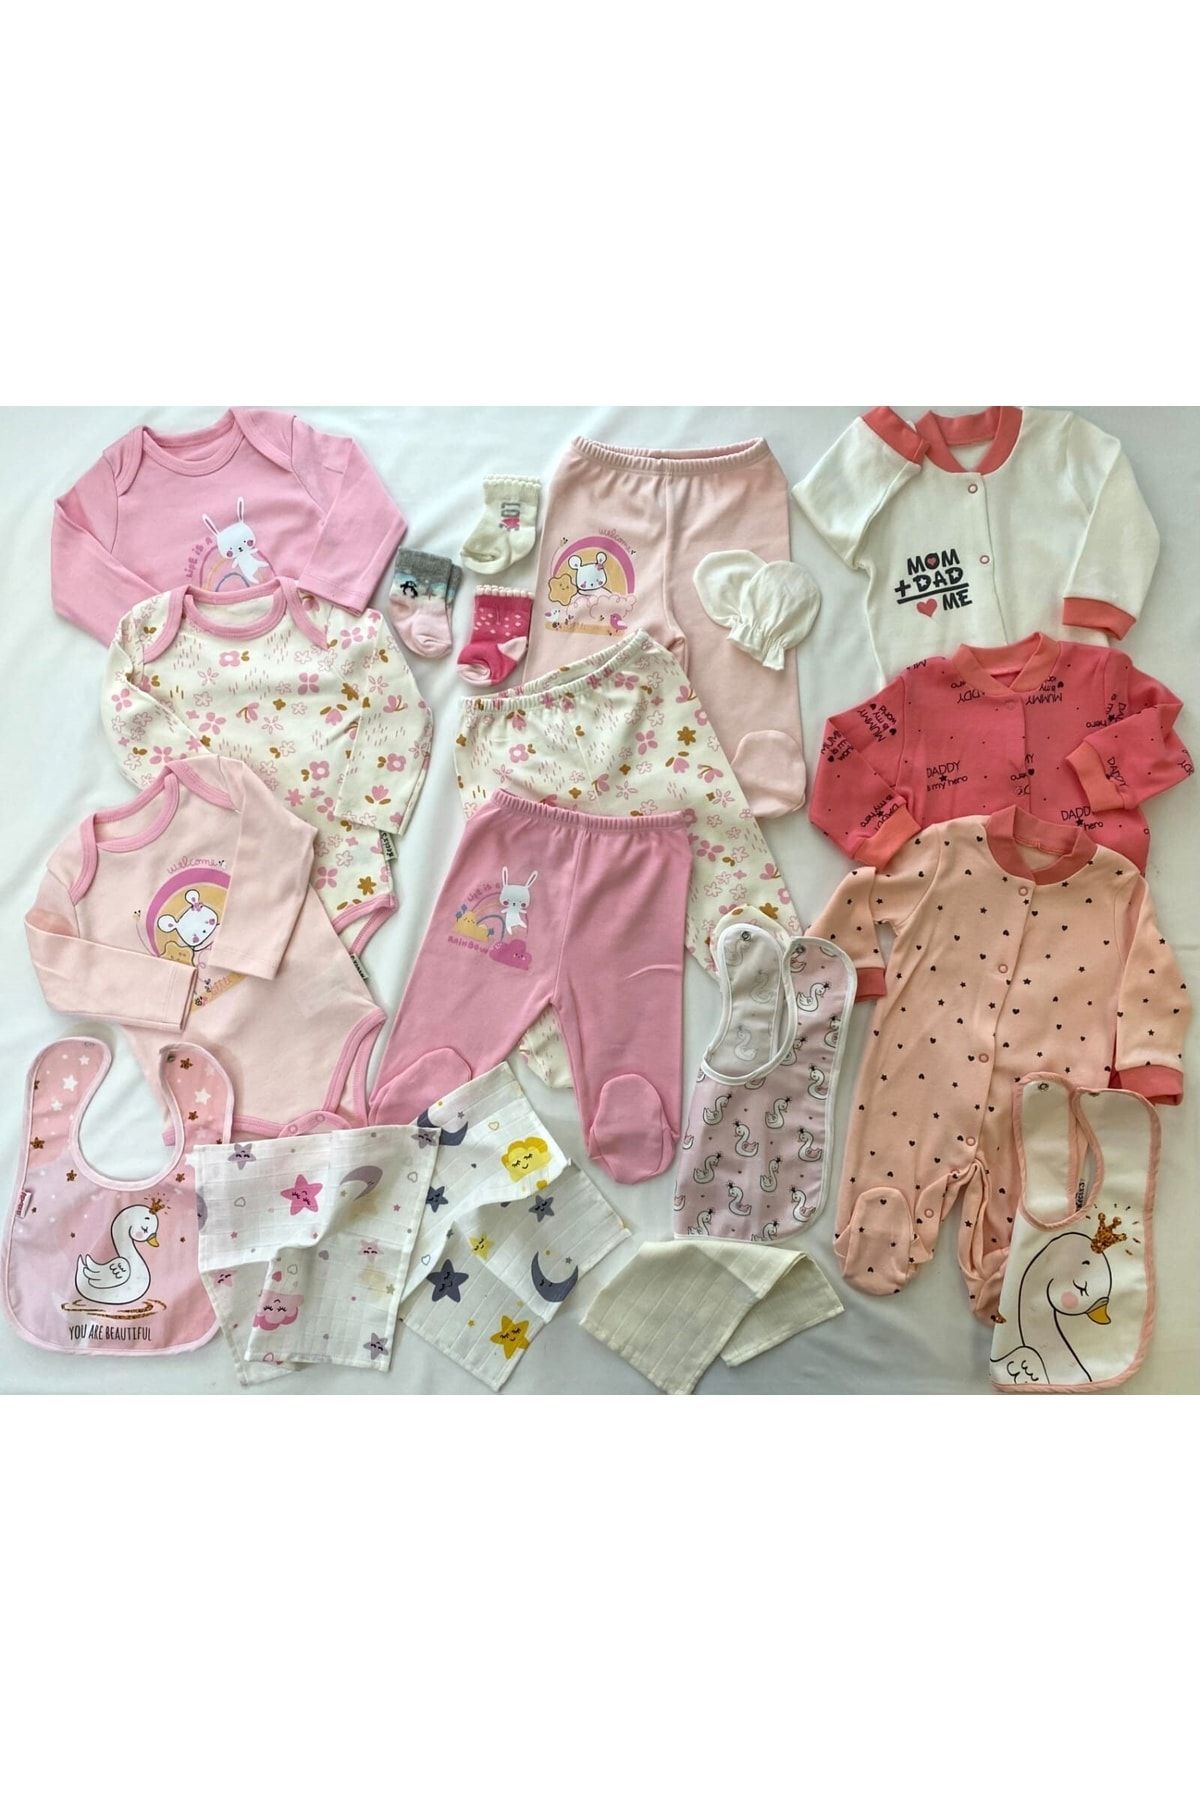 Necix's Kız Bebek Kıyafeti Pembe 3'lü Alt Üst Takım 3'lü Kız Bebek Tulum 3önlük 3mendil 3çorap 19'lu